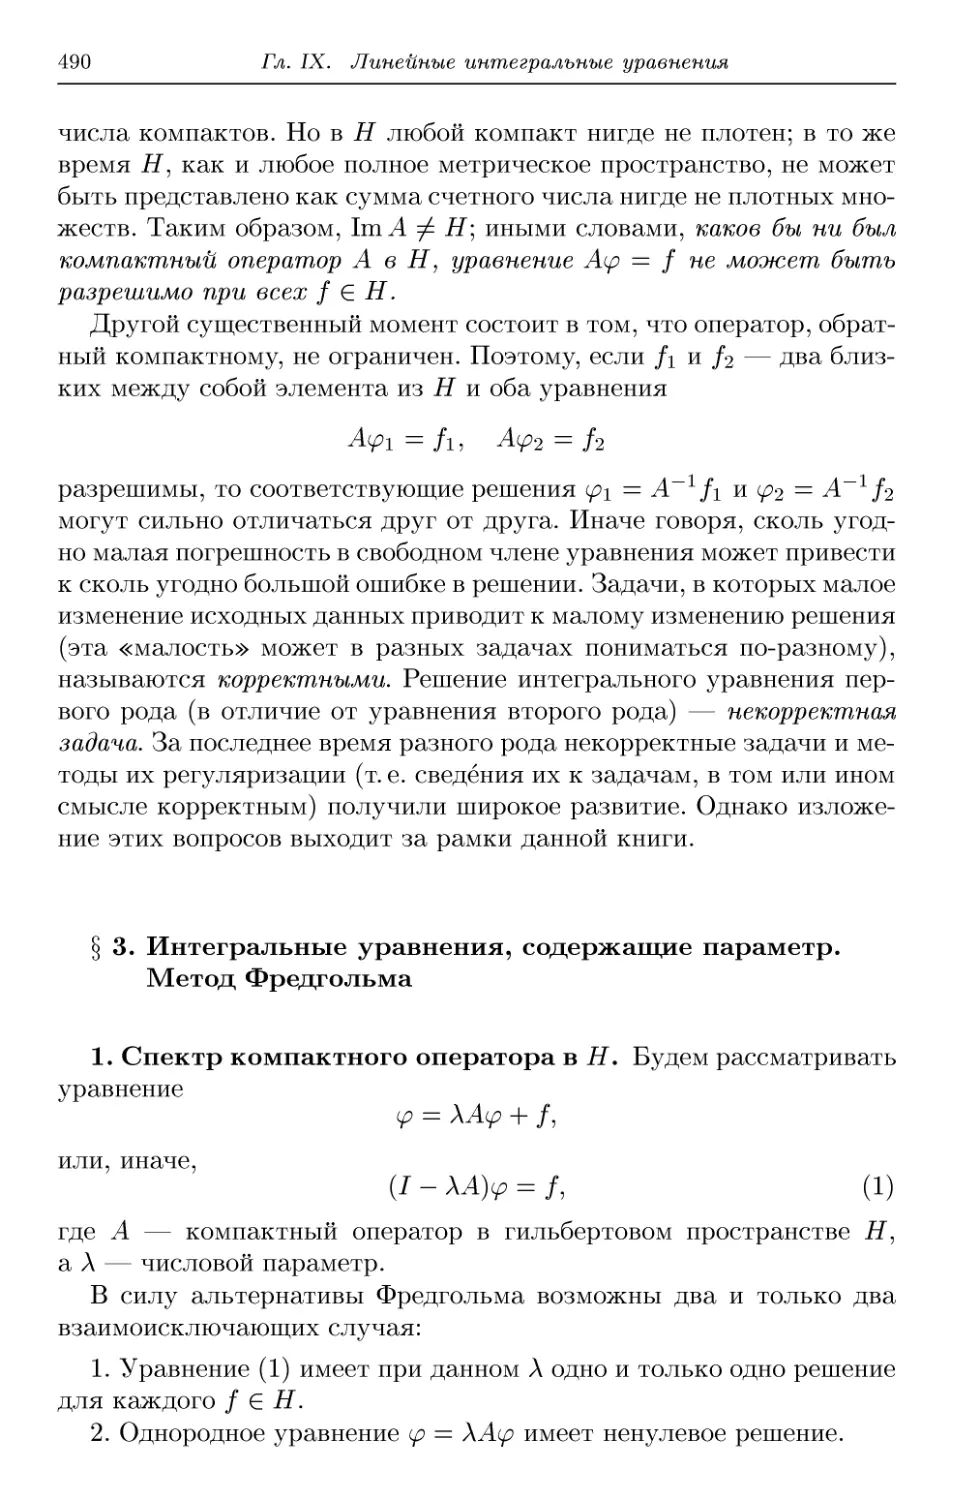 § 3. Интегральные уравнения, содержащие параметр. Метод Фредгольма